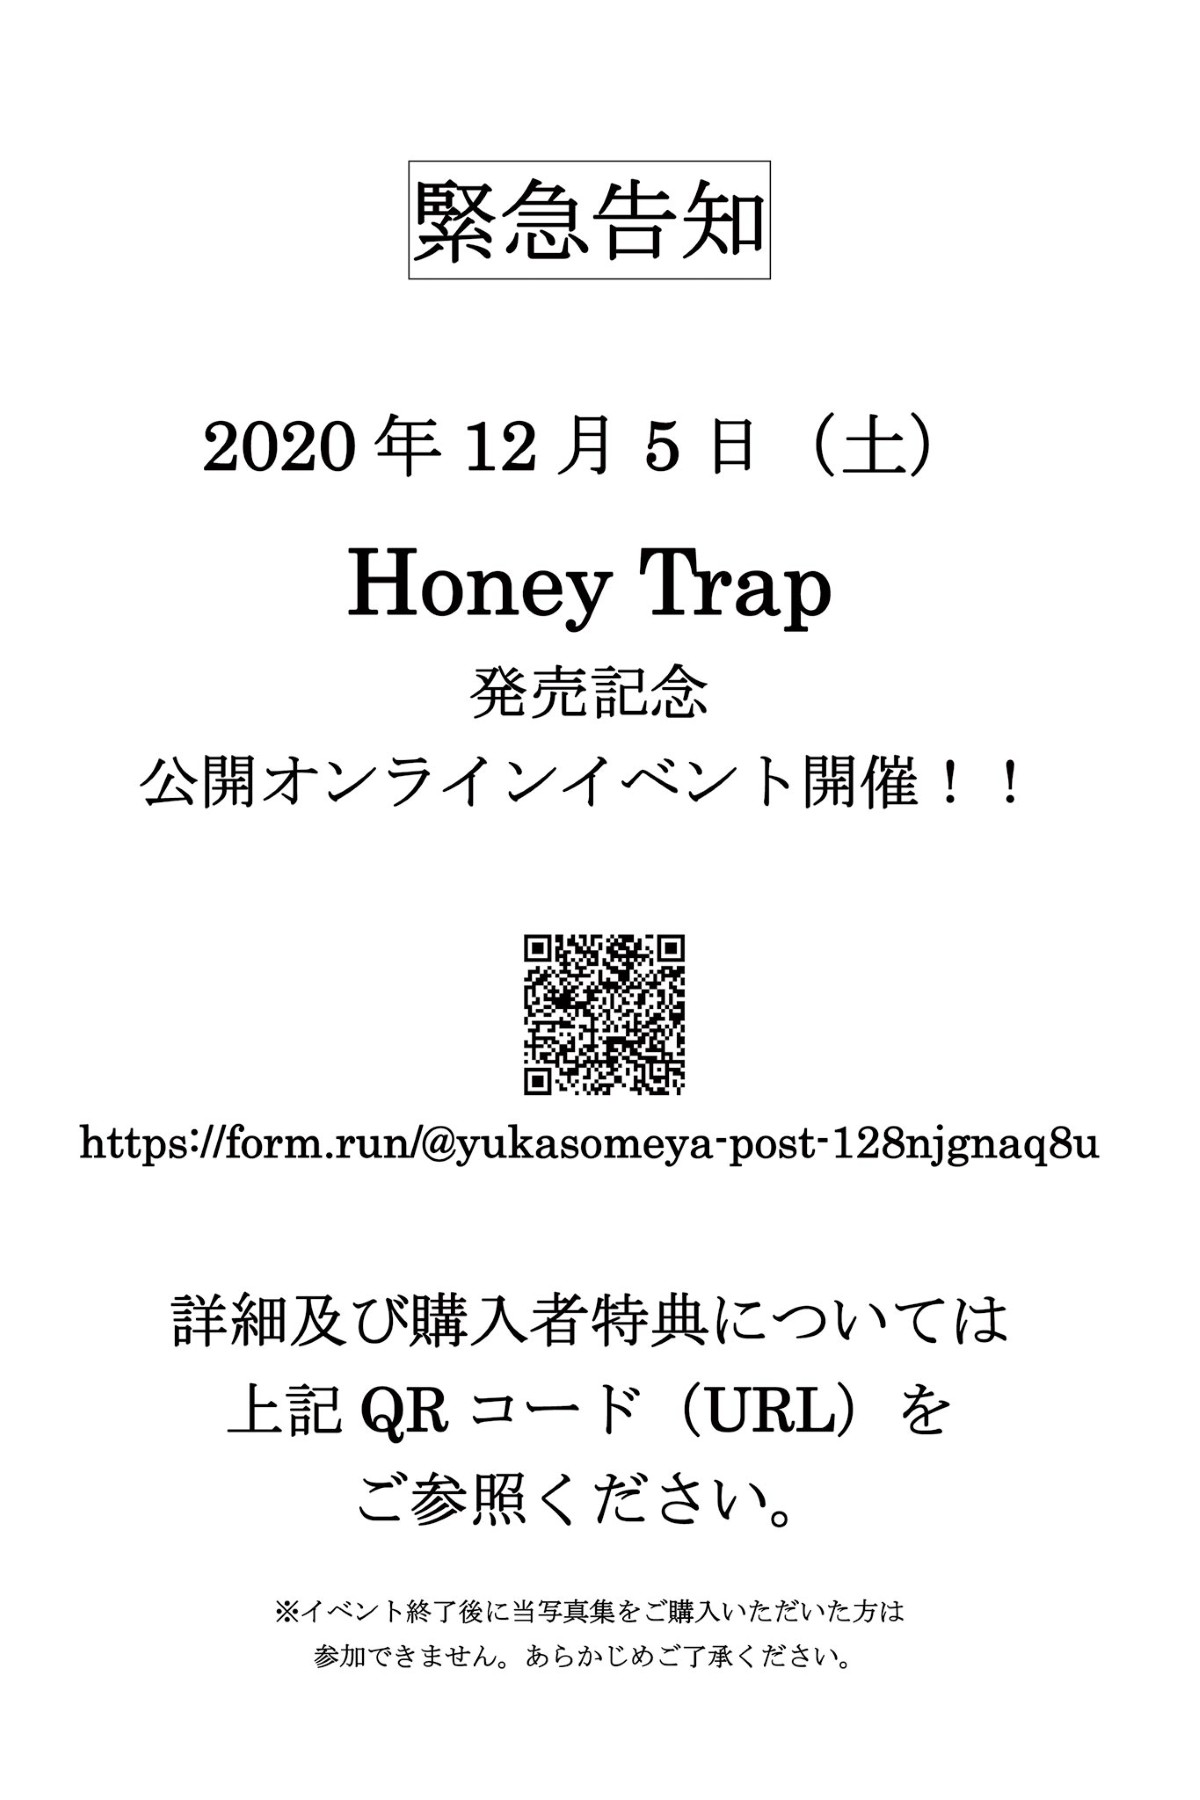 Photobook 2020 11 16 Yuka Someya 染谷有香 HoneyTrap 0084 3240467723.jpg